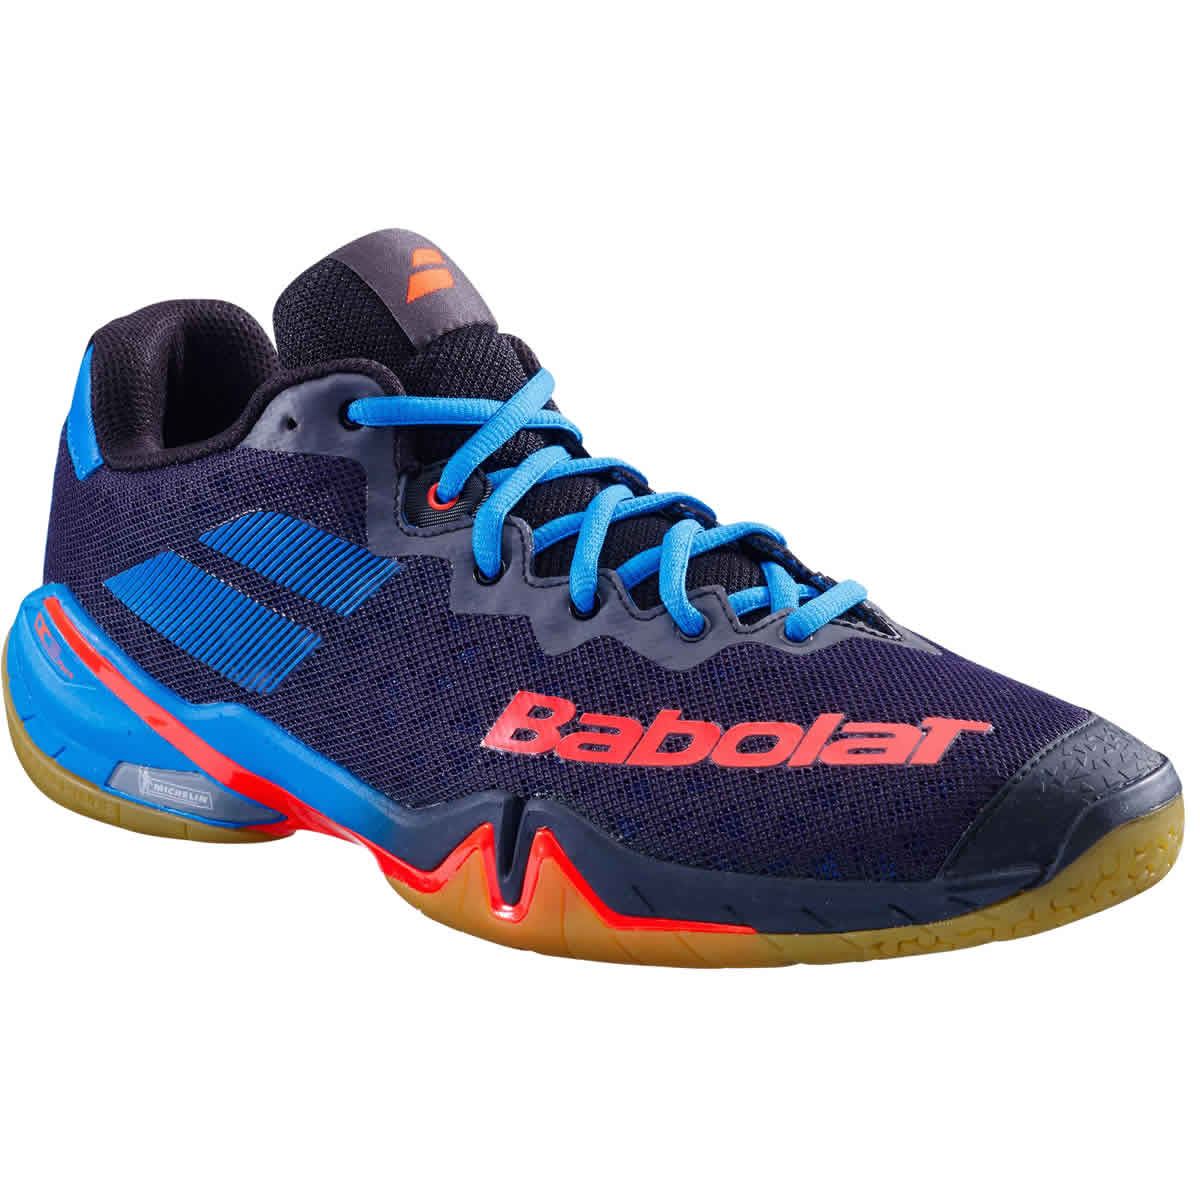 Babolat Shadow Tour Badminton Shoes - Black Blue